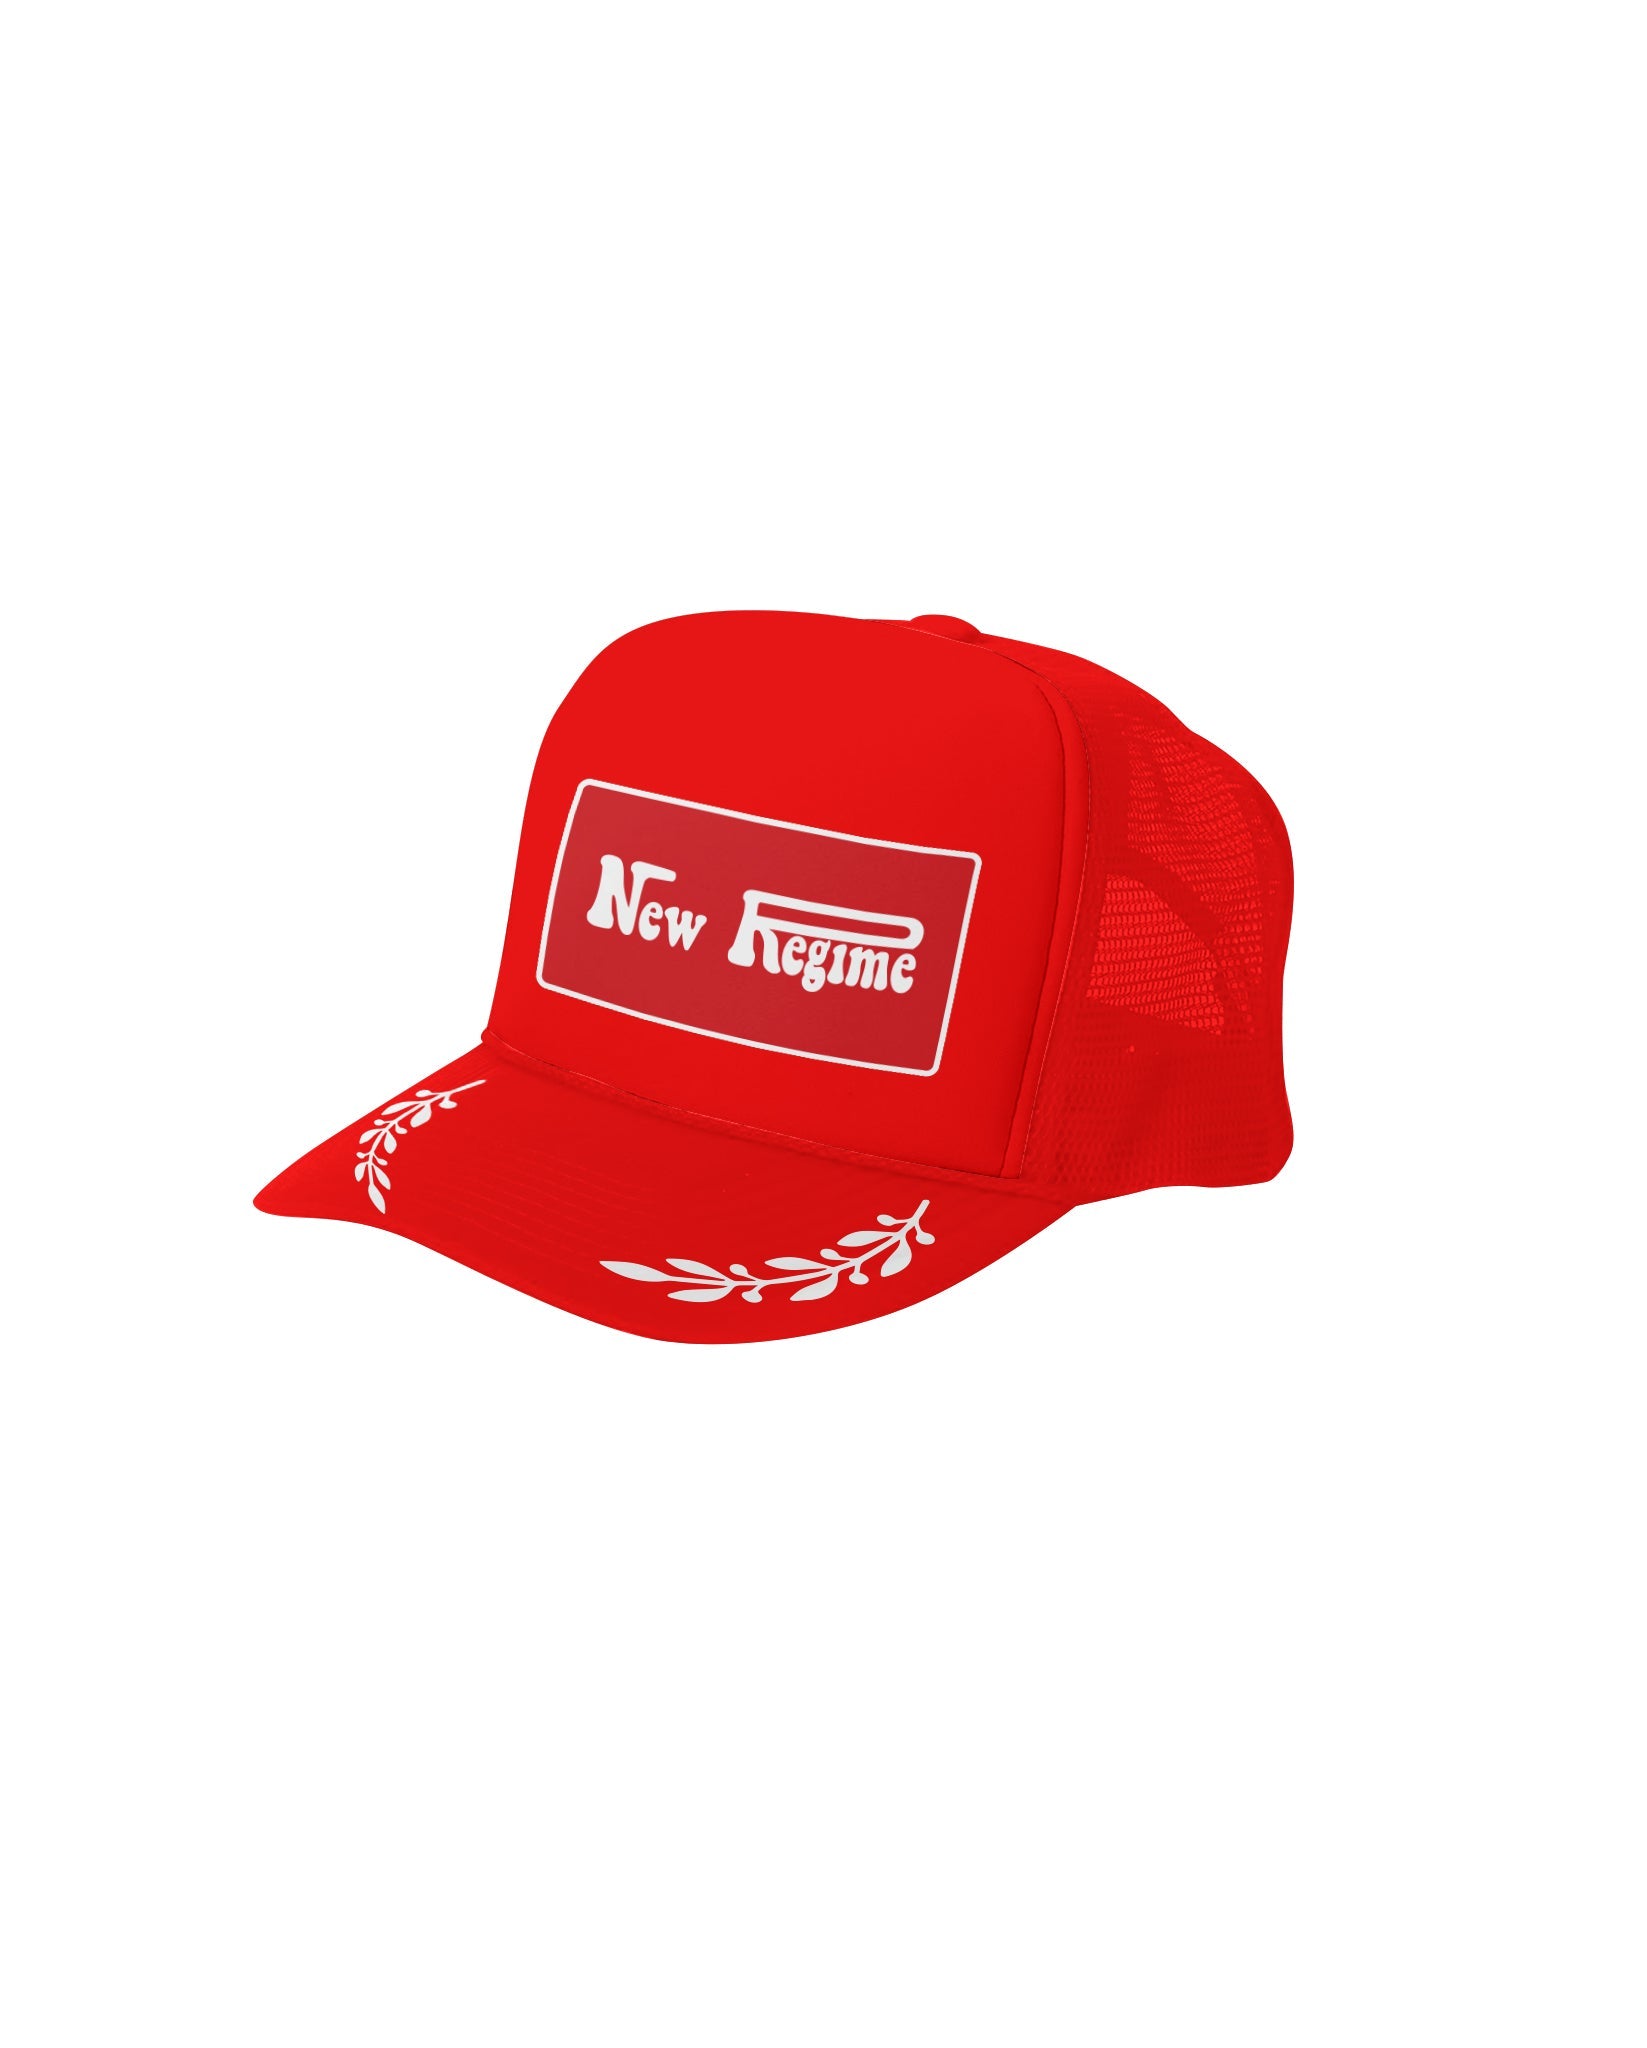 New Regime Customs Trucker Hat